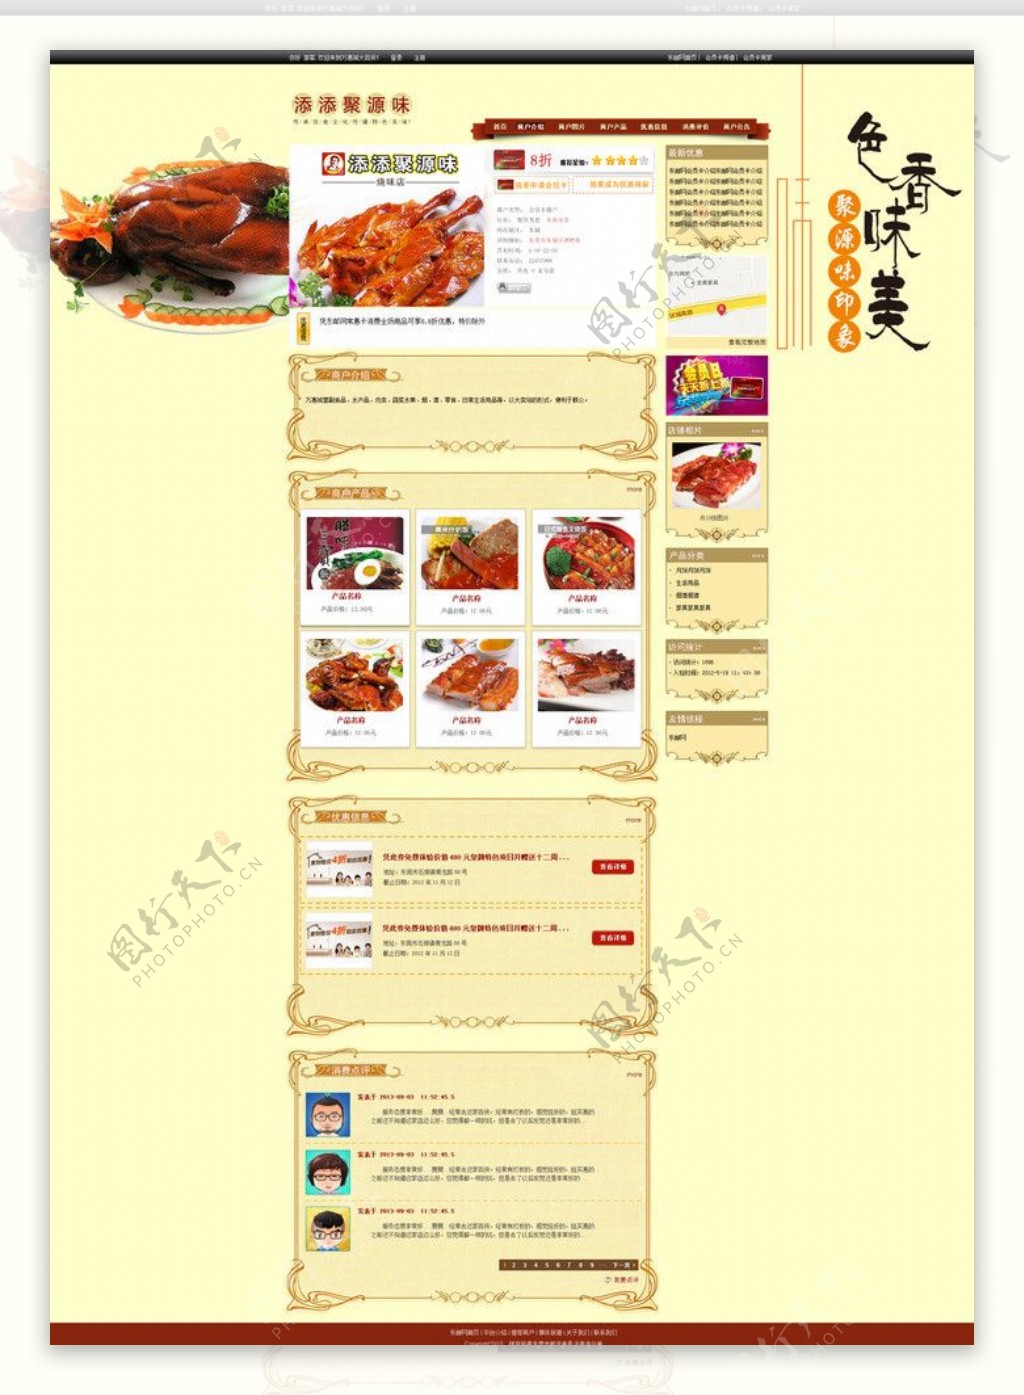 美食网页图片